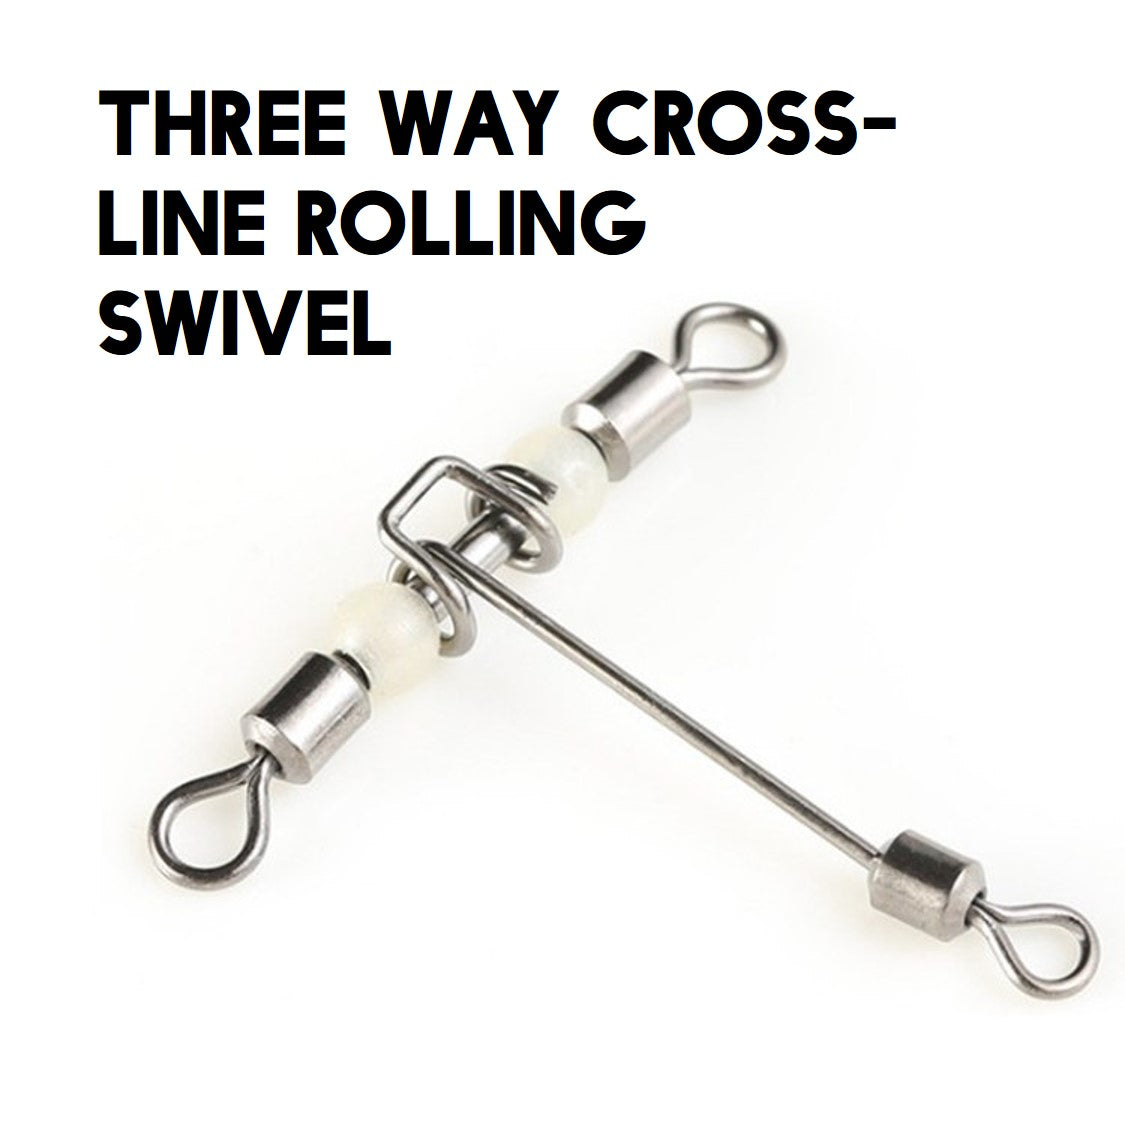 MK Swivel Three way cross-line rolling swivel MK059